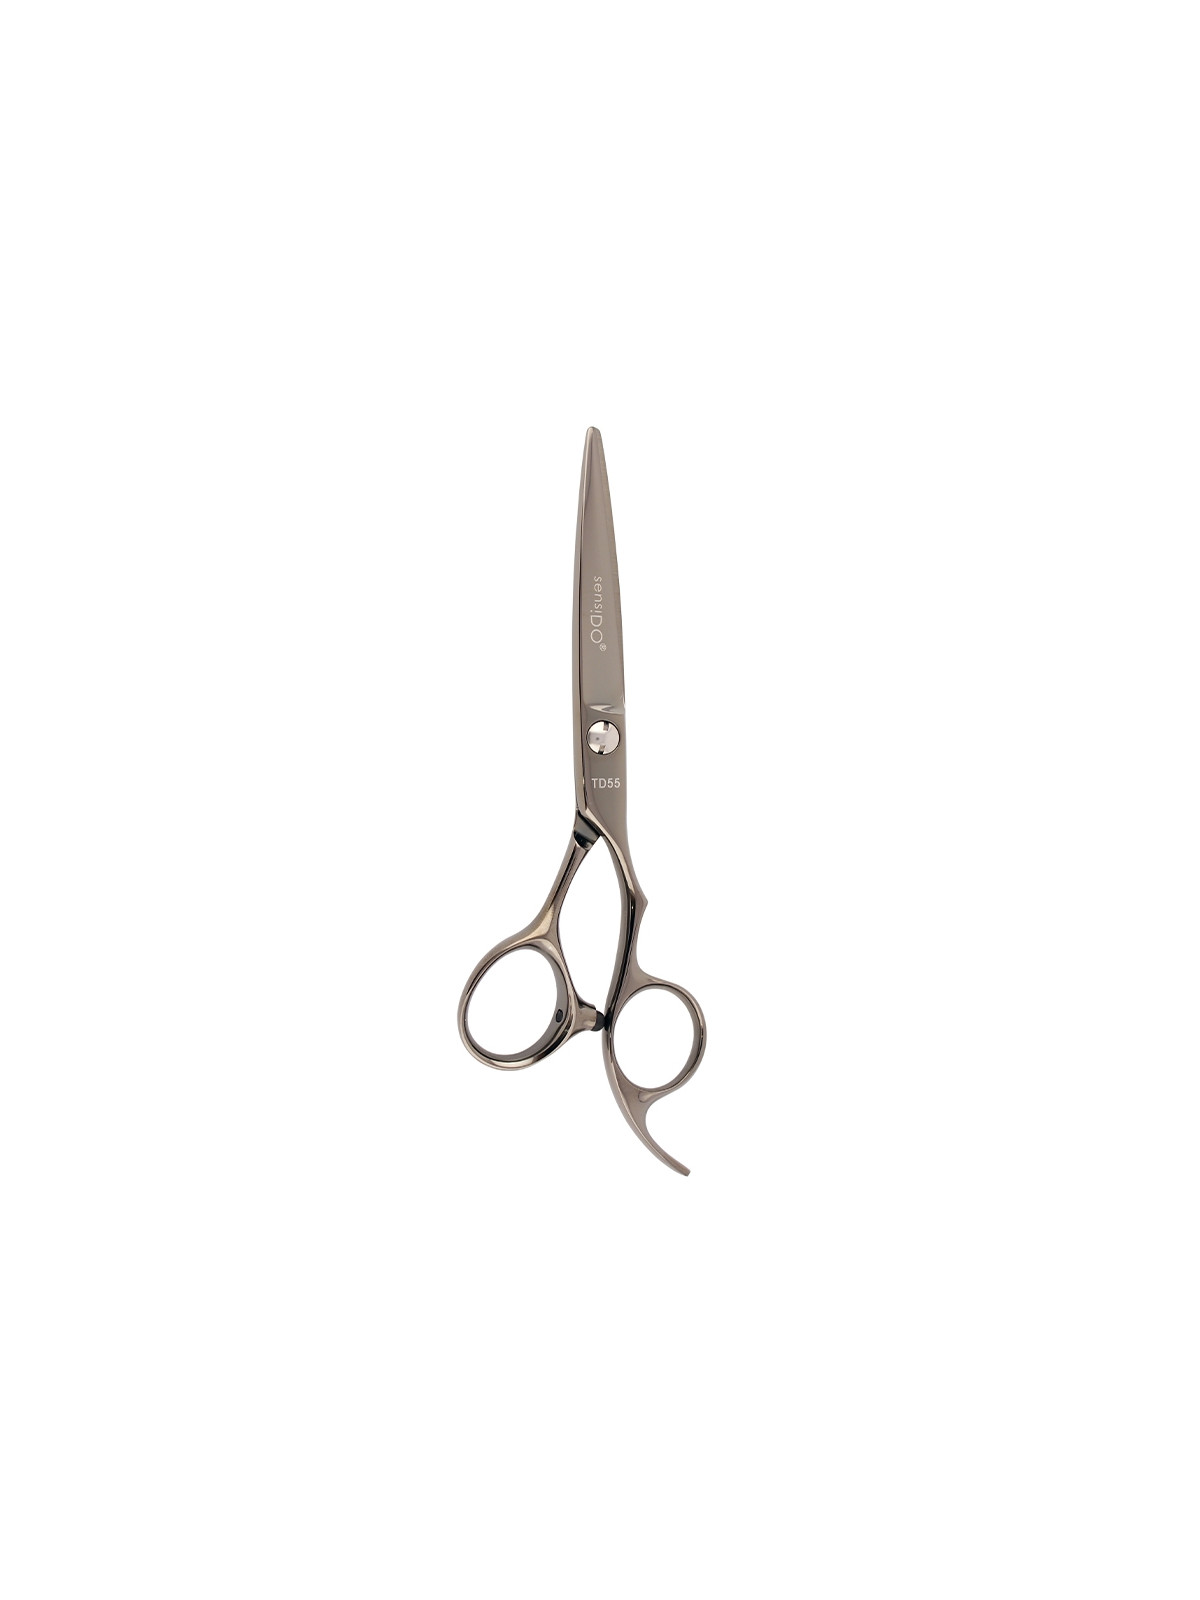 SensiDO TD Black Titanium cutting scissors